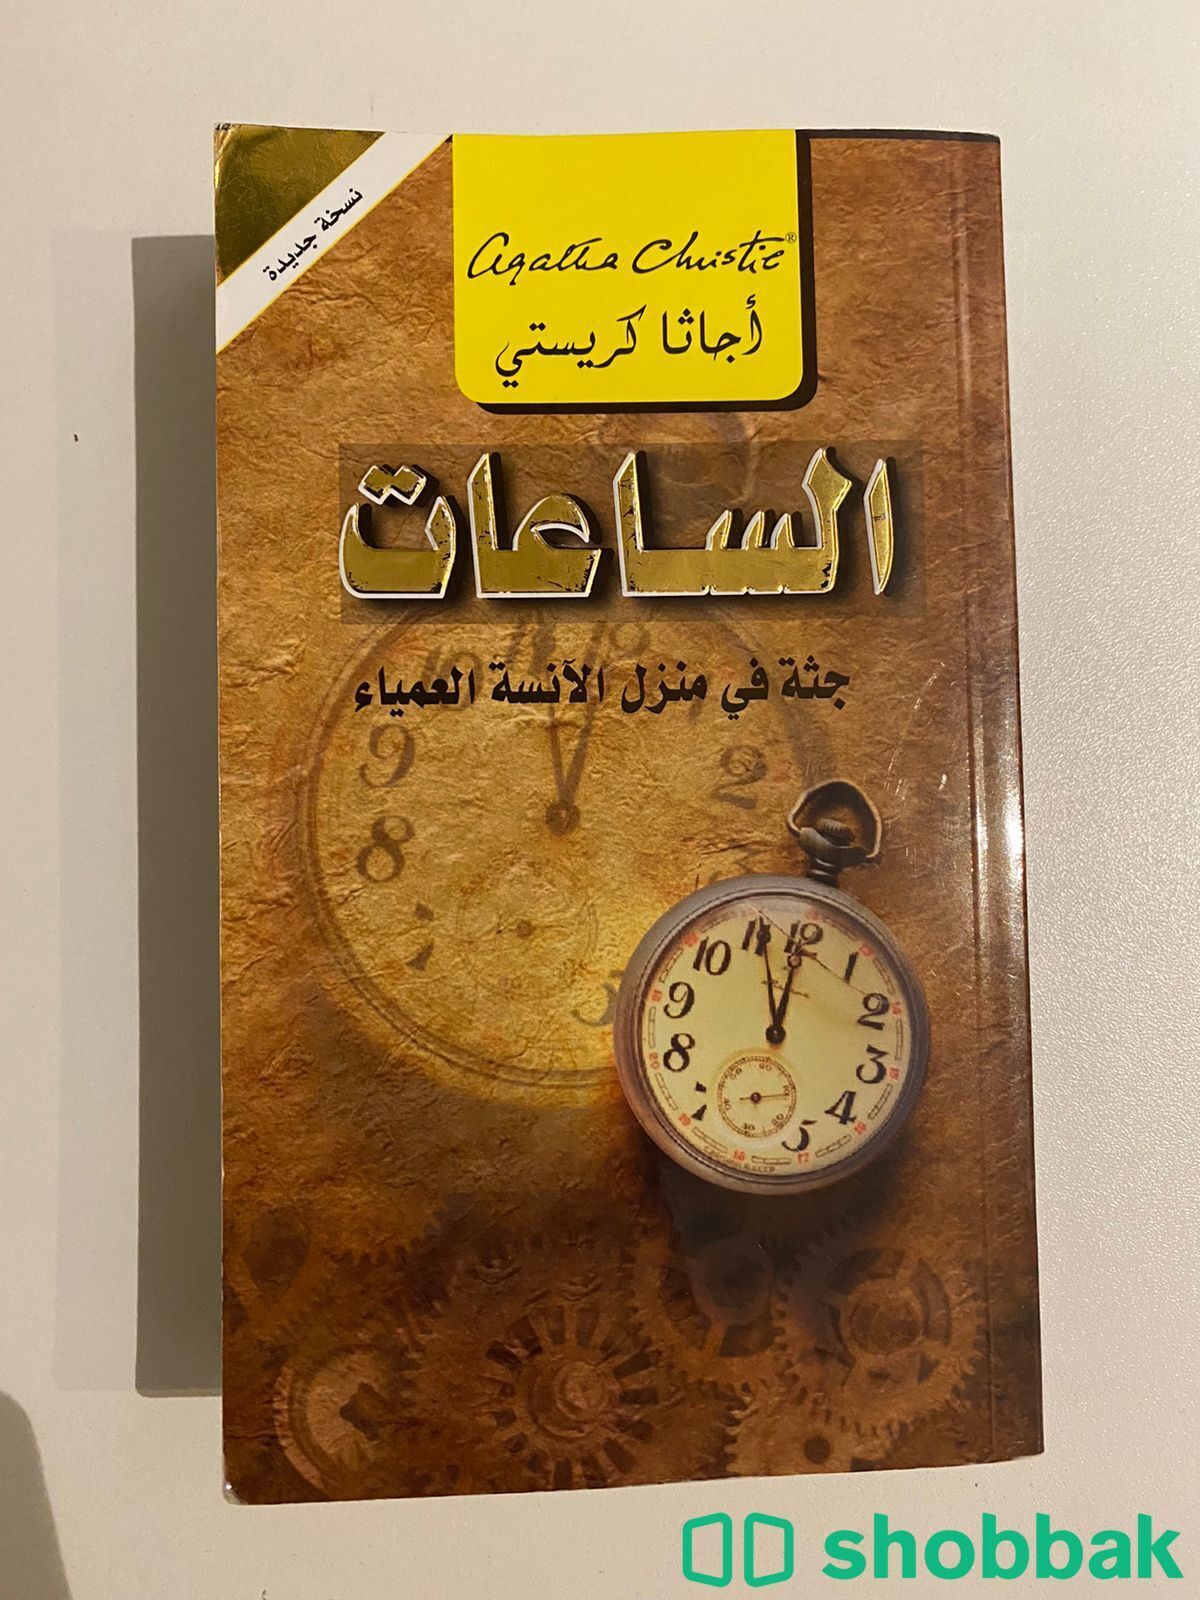 أجاثا كريستي - الساعات Shobbak Saudi Arabia